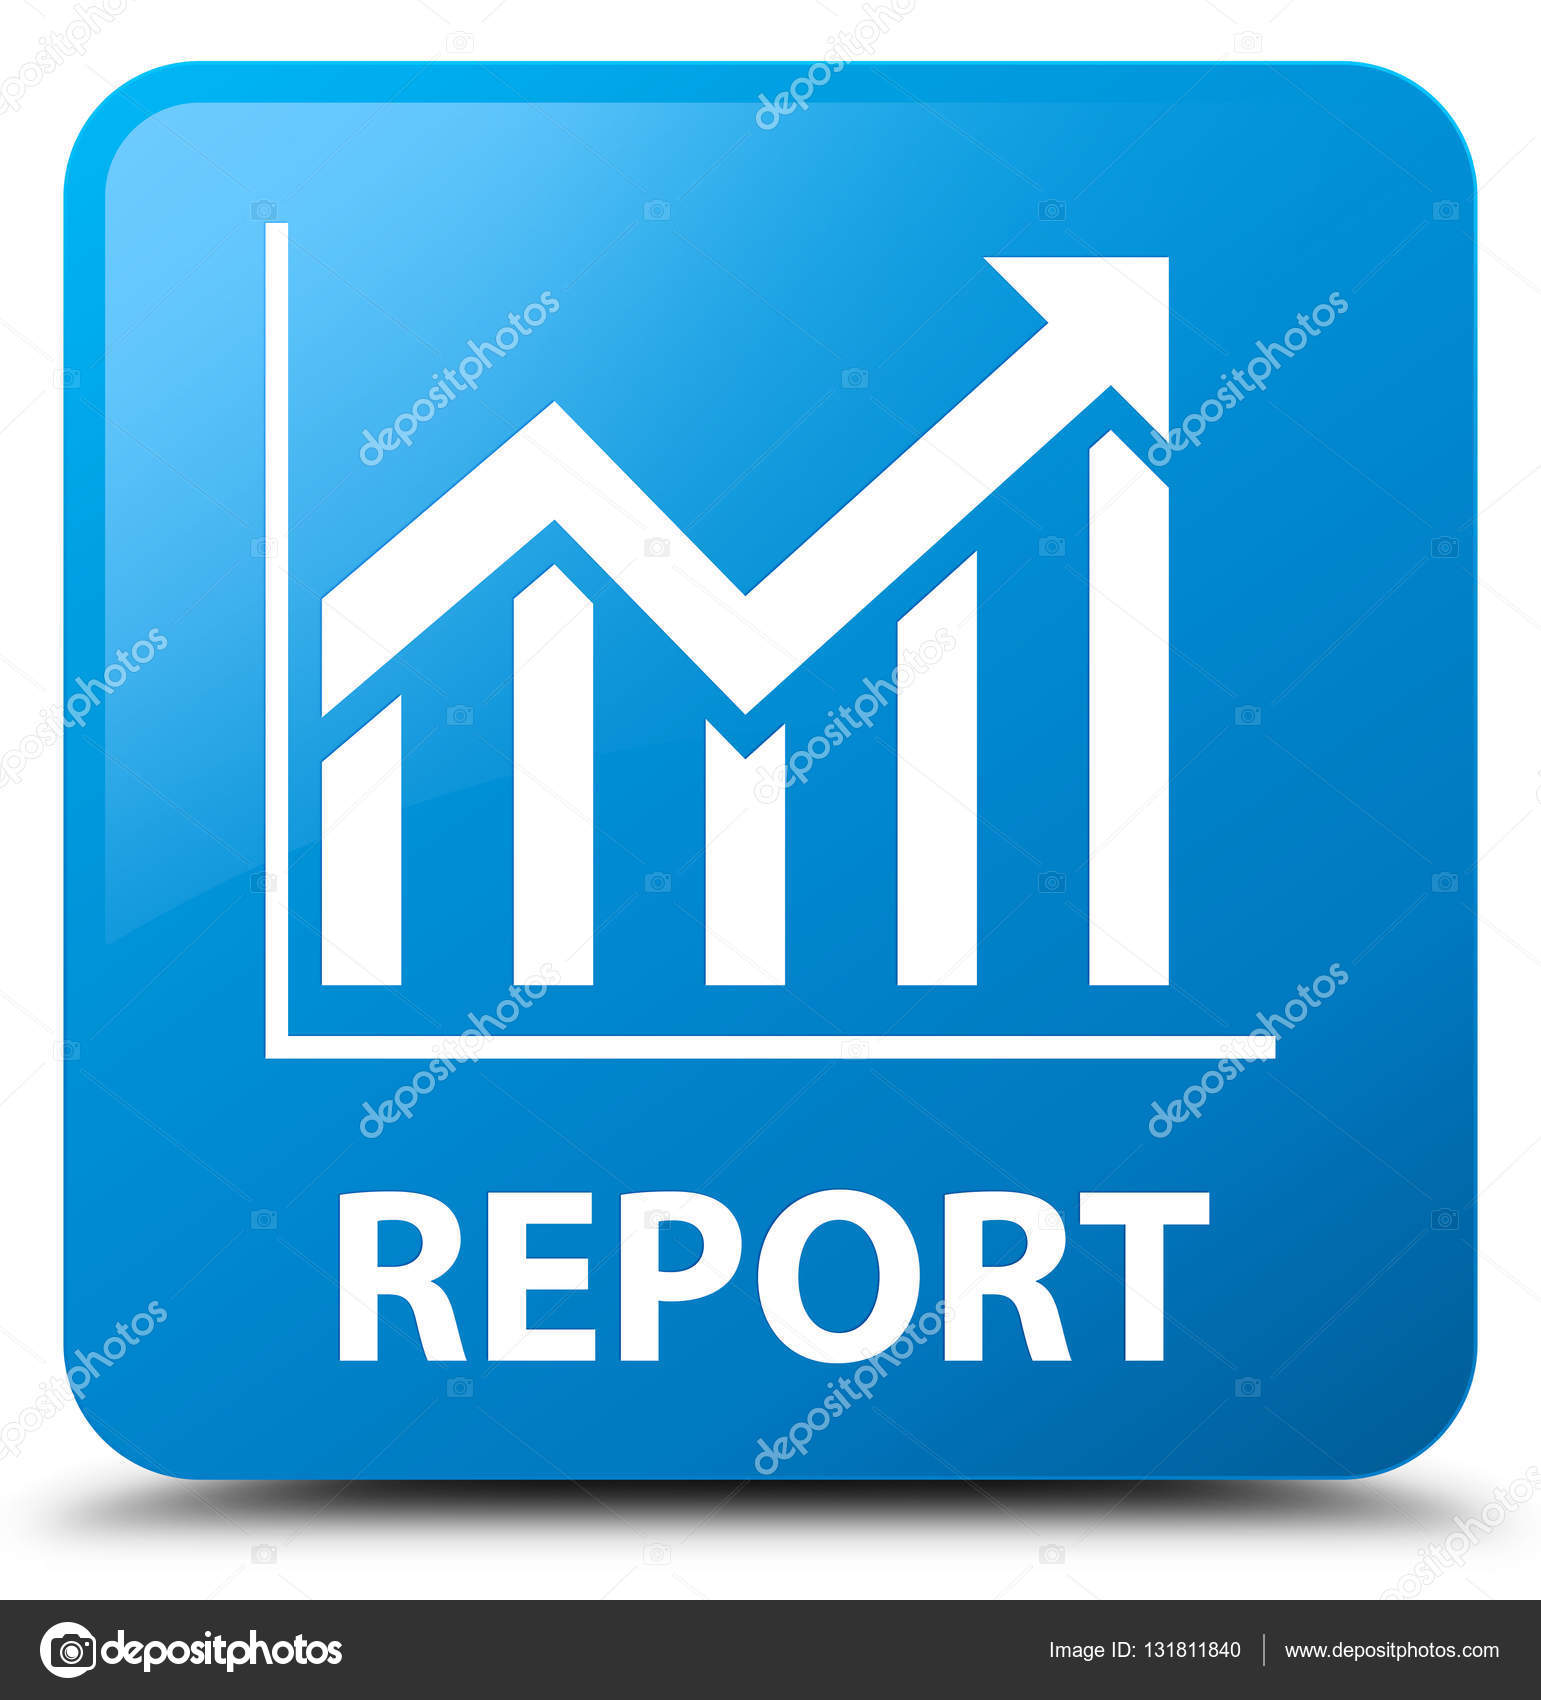 Report (statistics icon) cyan blue square button